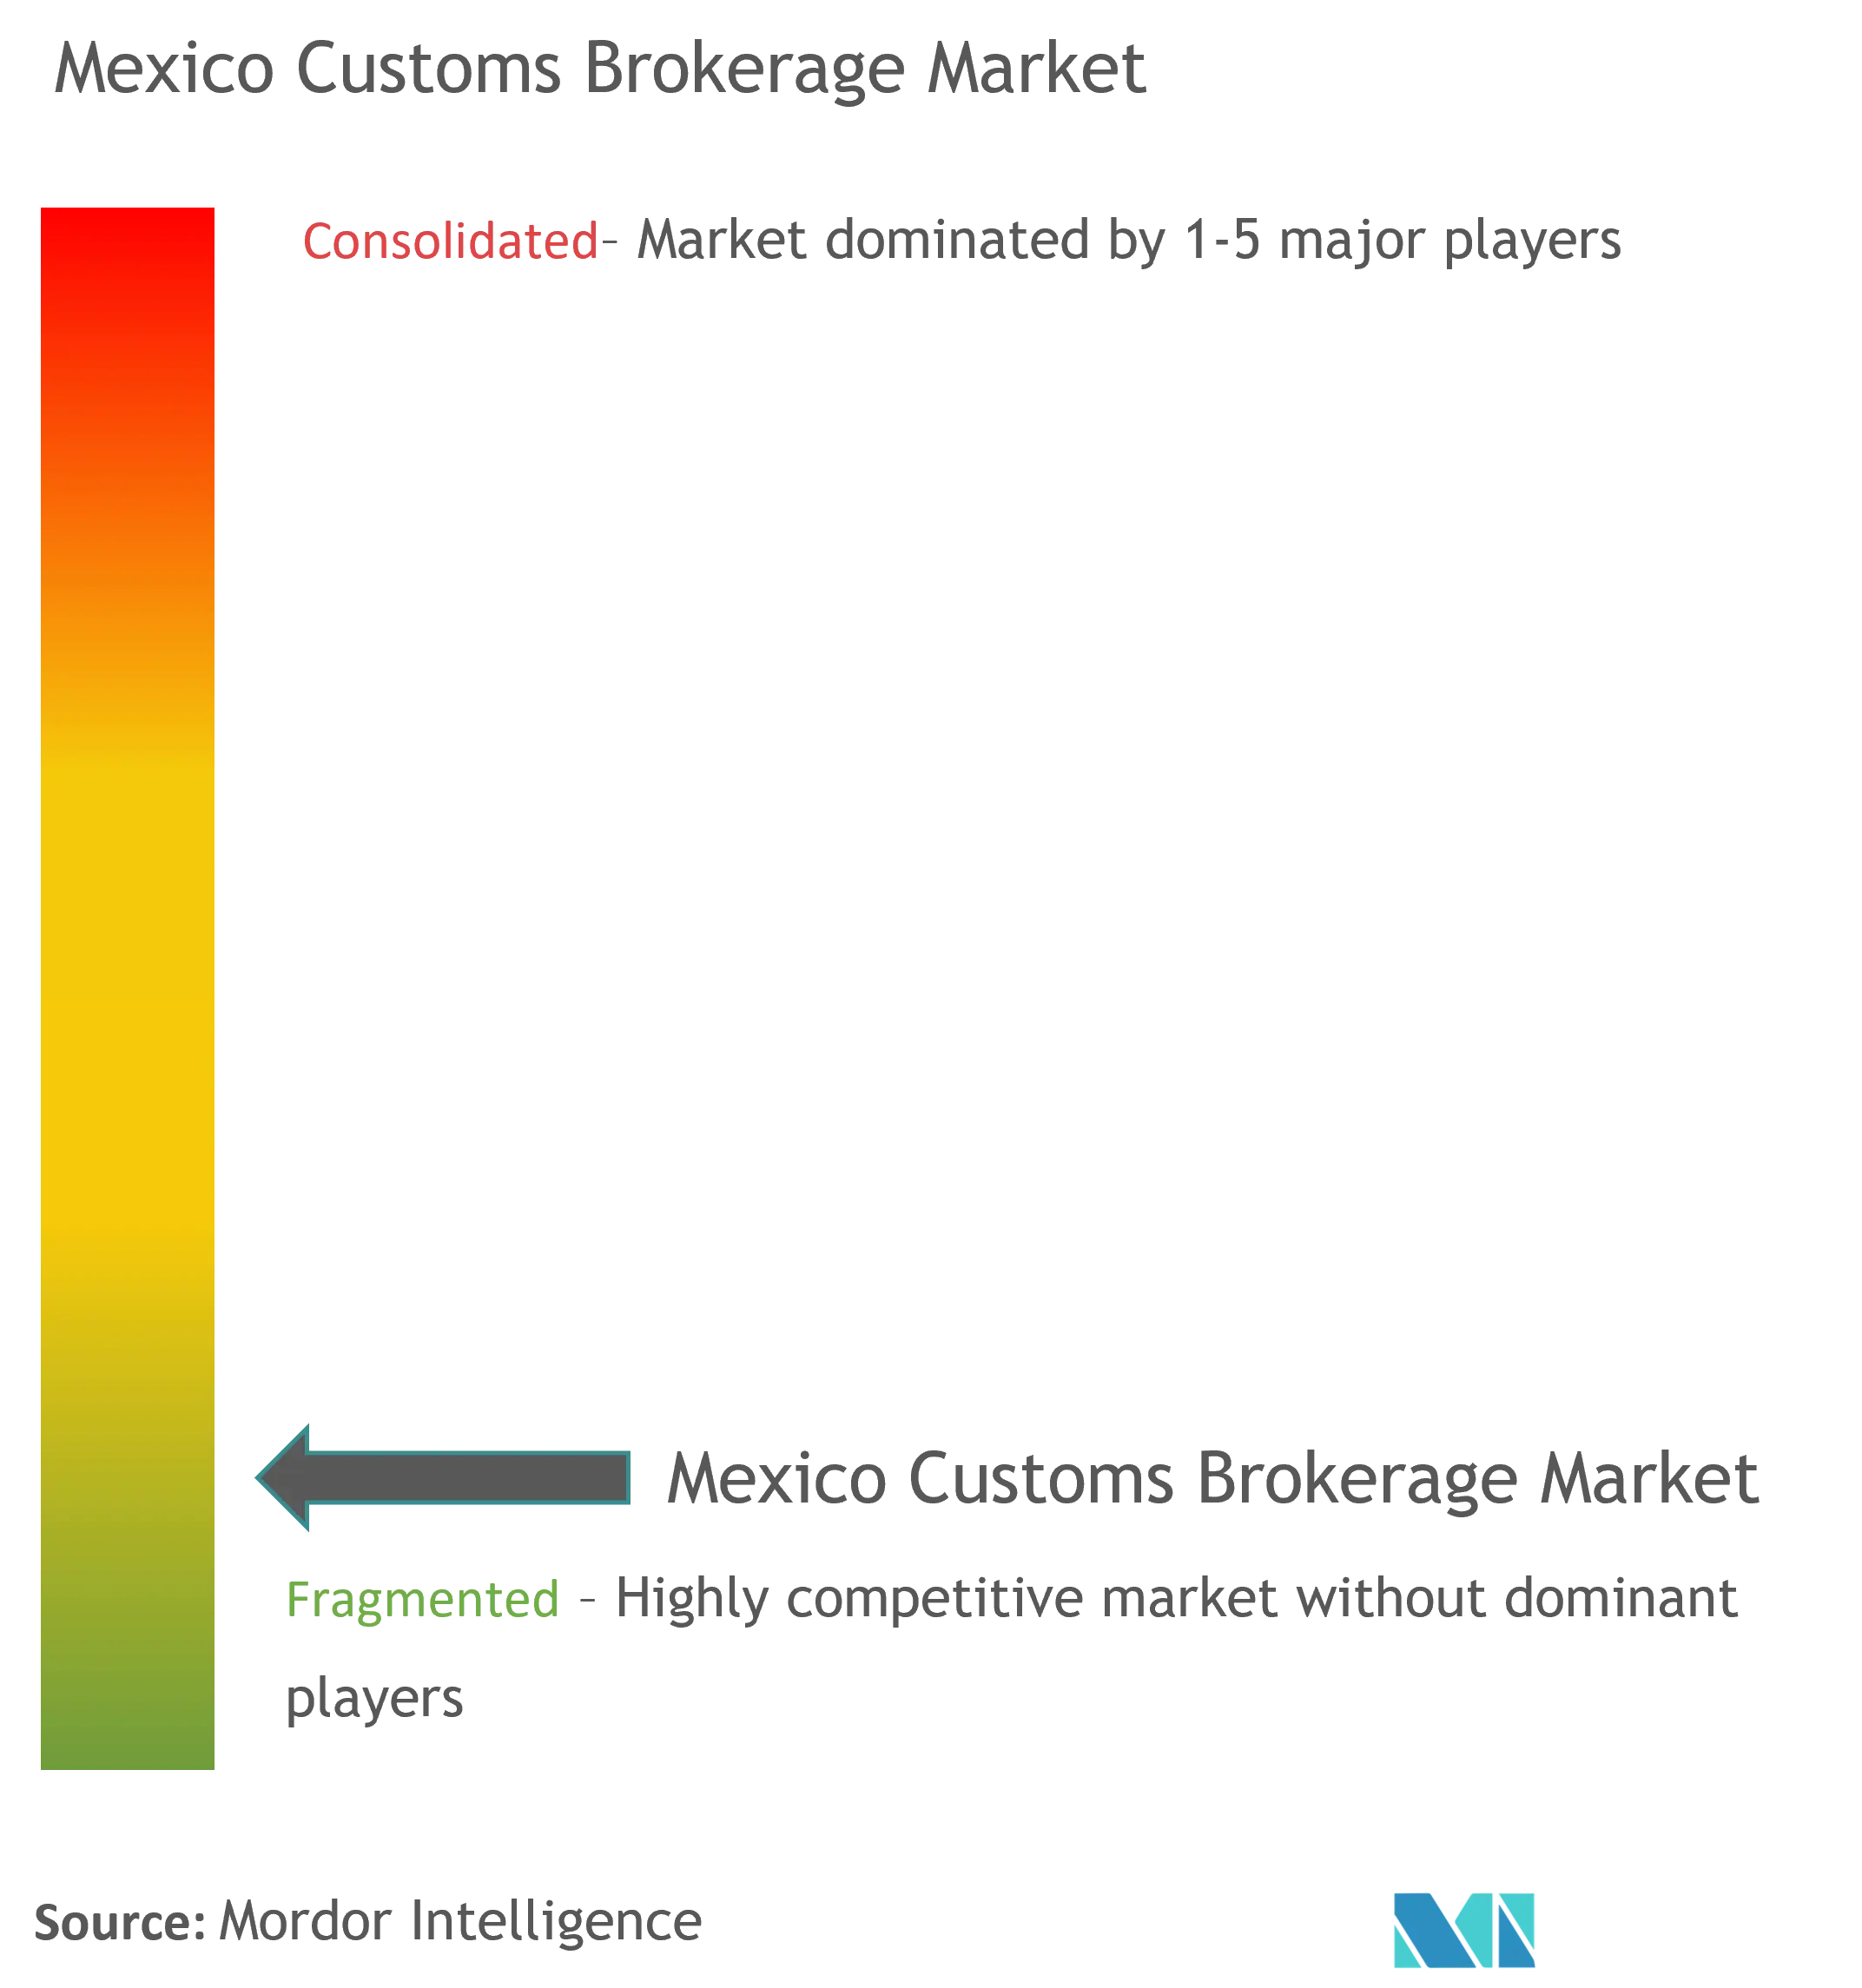 Mexico Customs Brokerage Market Concentration